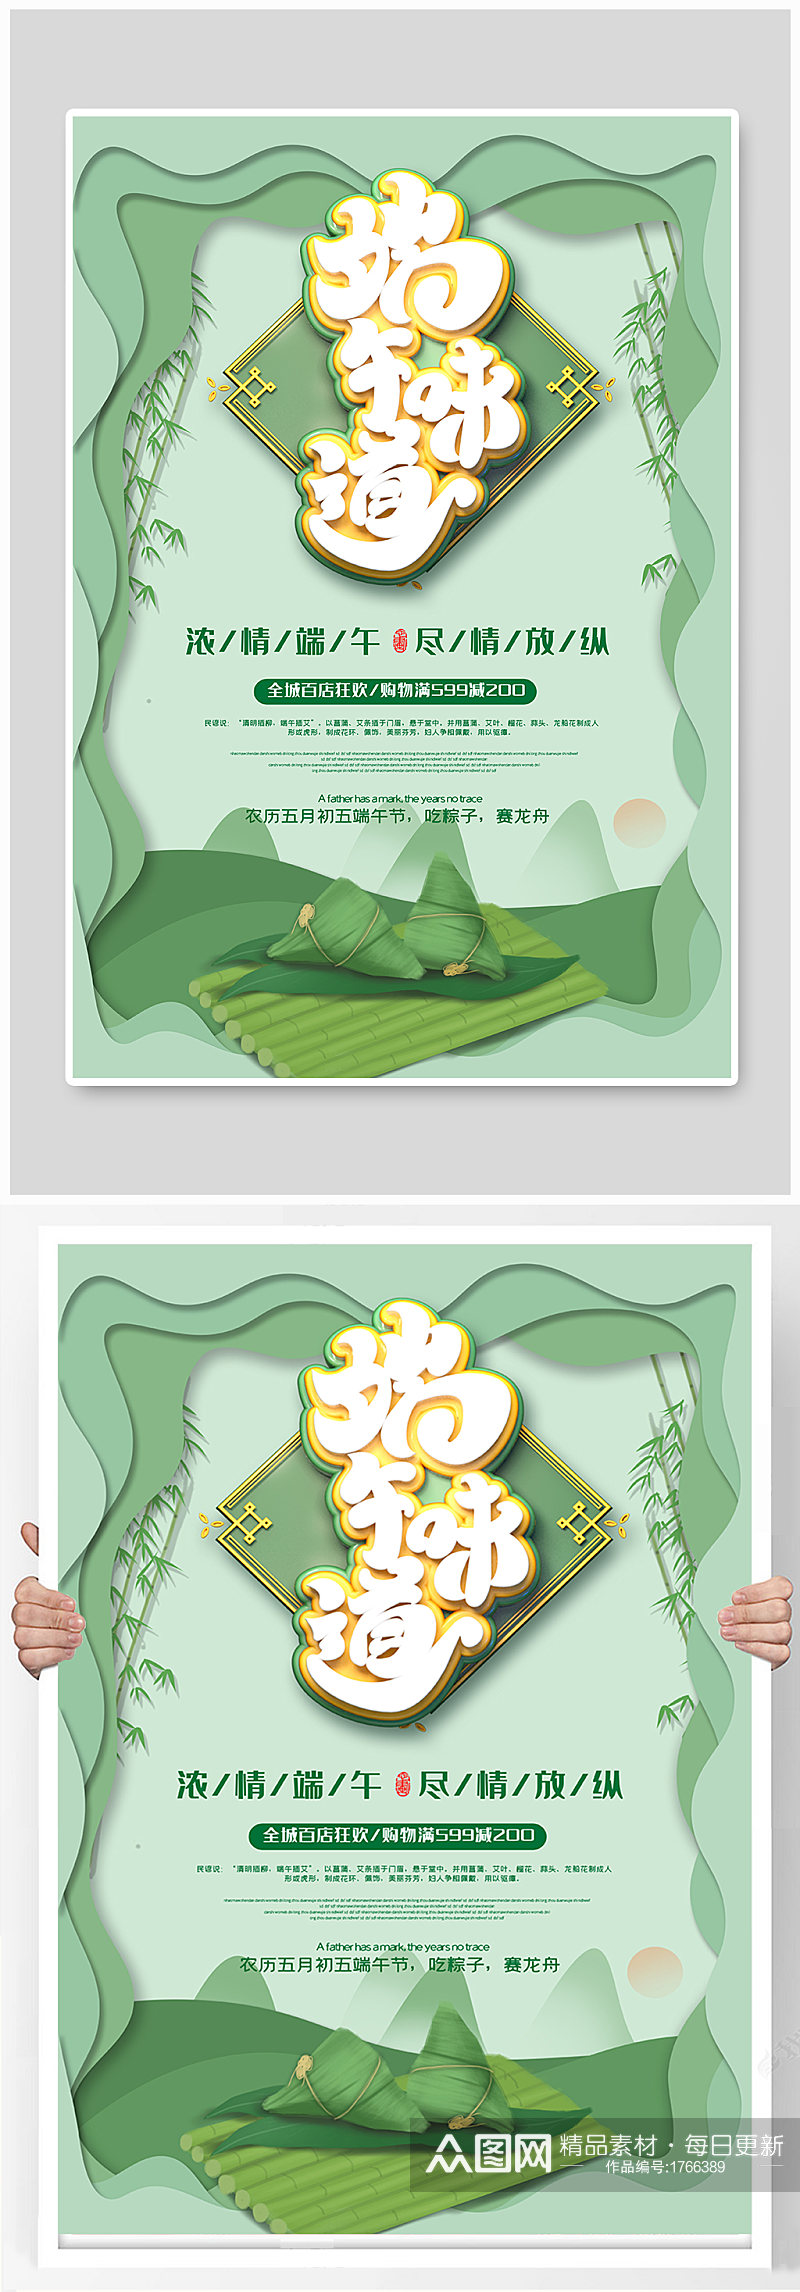 端午节粽子插画海报素材